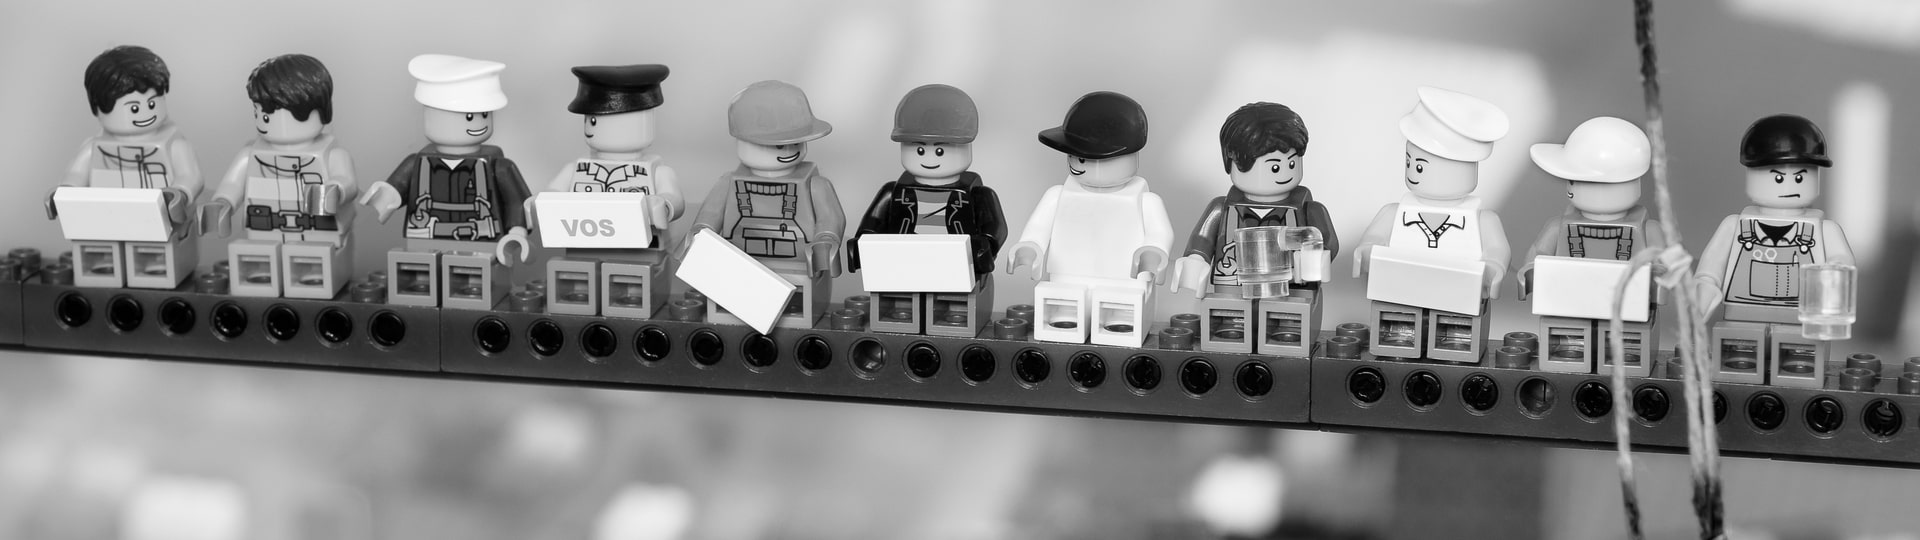 Lego plánuje postavit novou továrnu ve Vietnamu